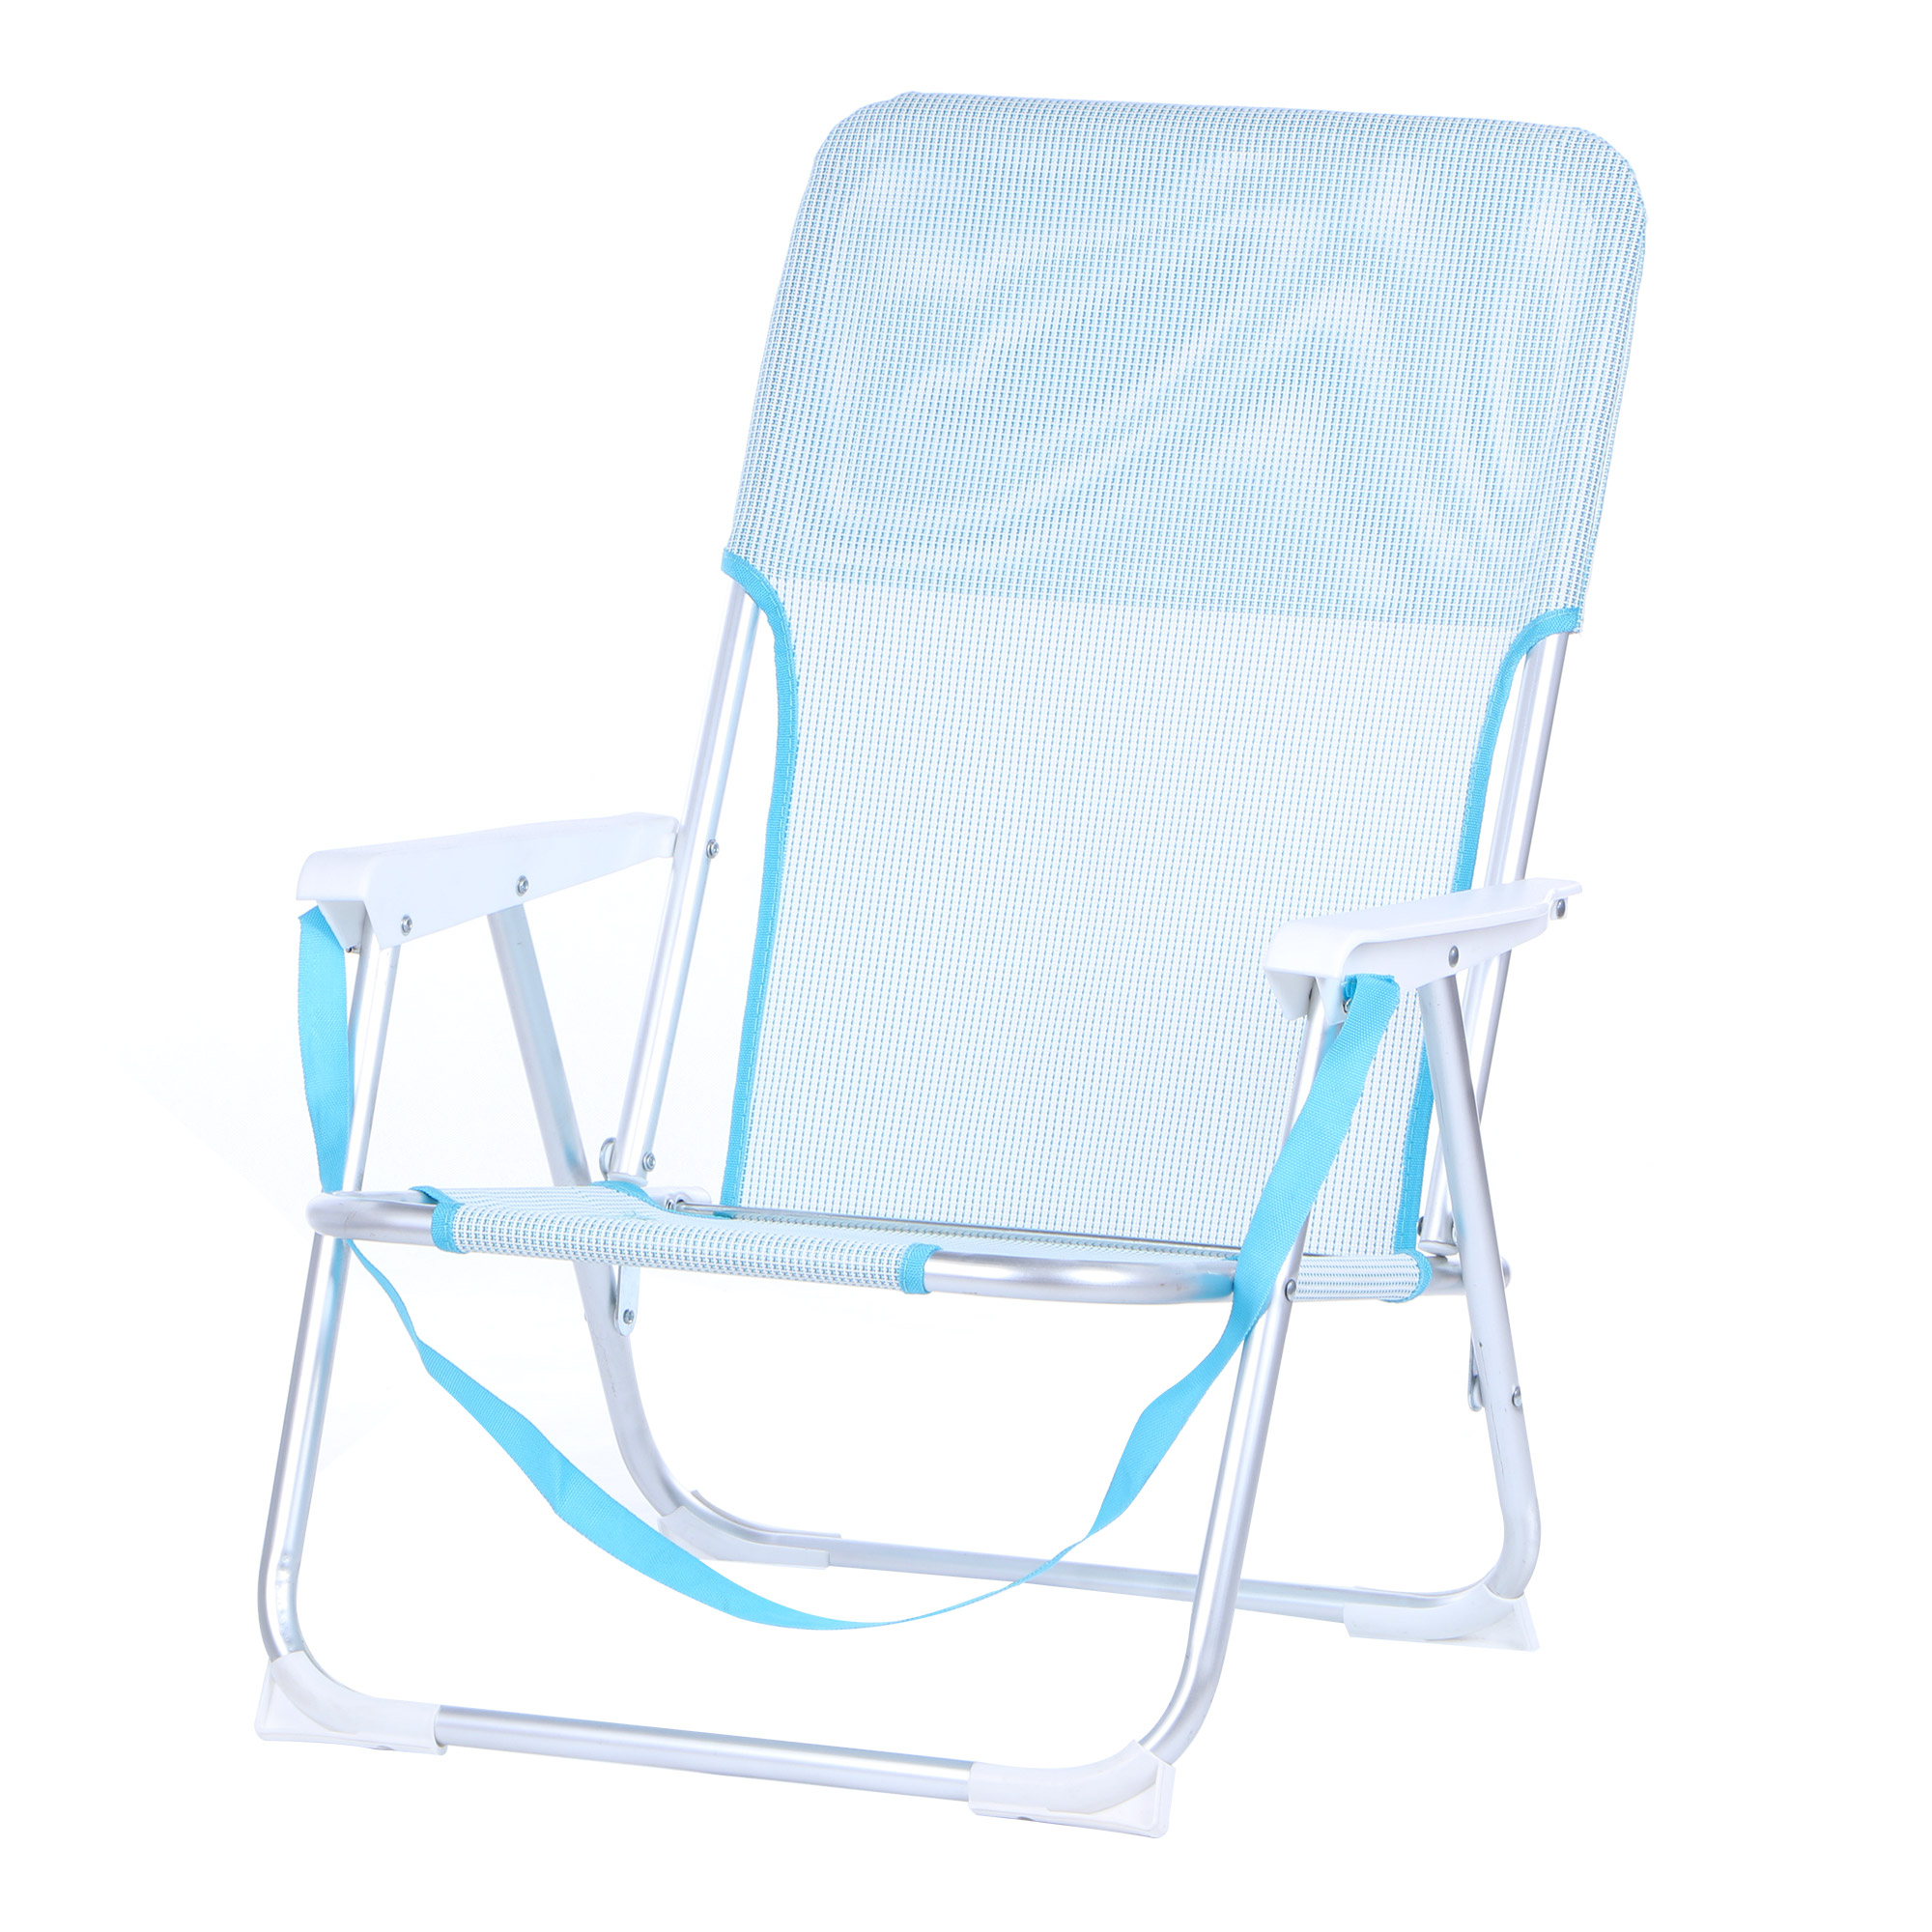 Кресло складное для кемпинга Koopman furniture 40x56x70cm, цвет в ассортименте, размер 40x56x70 см - фото 2